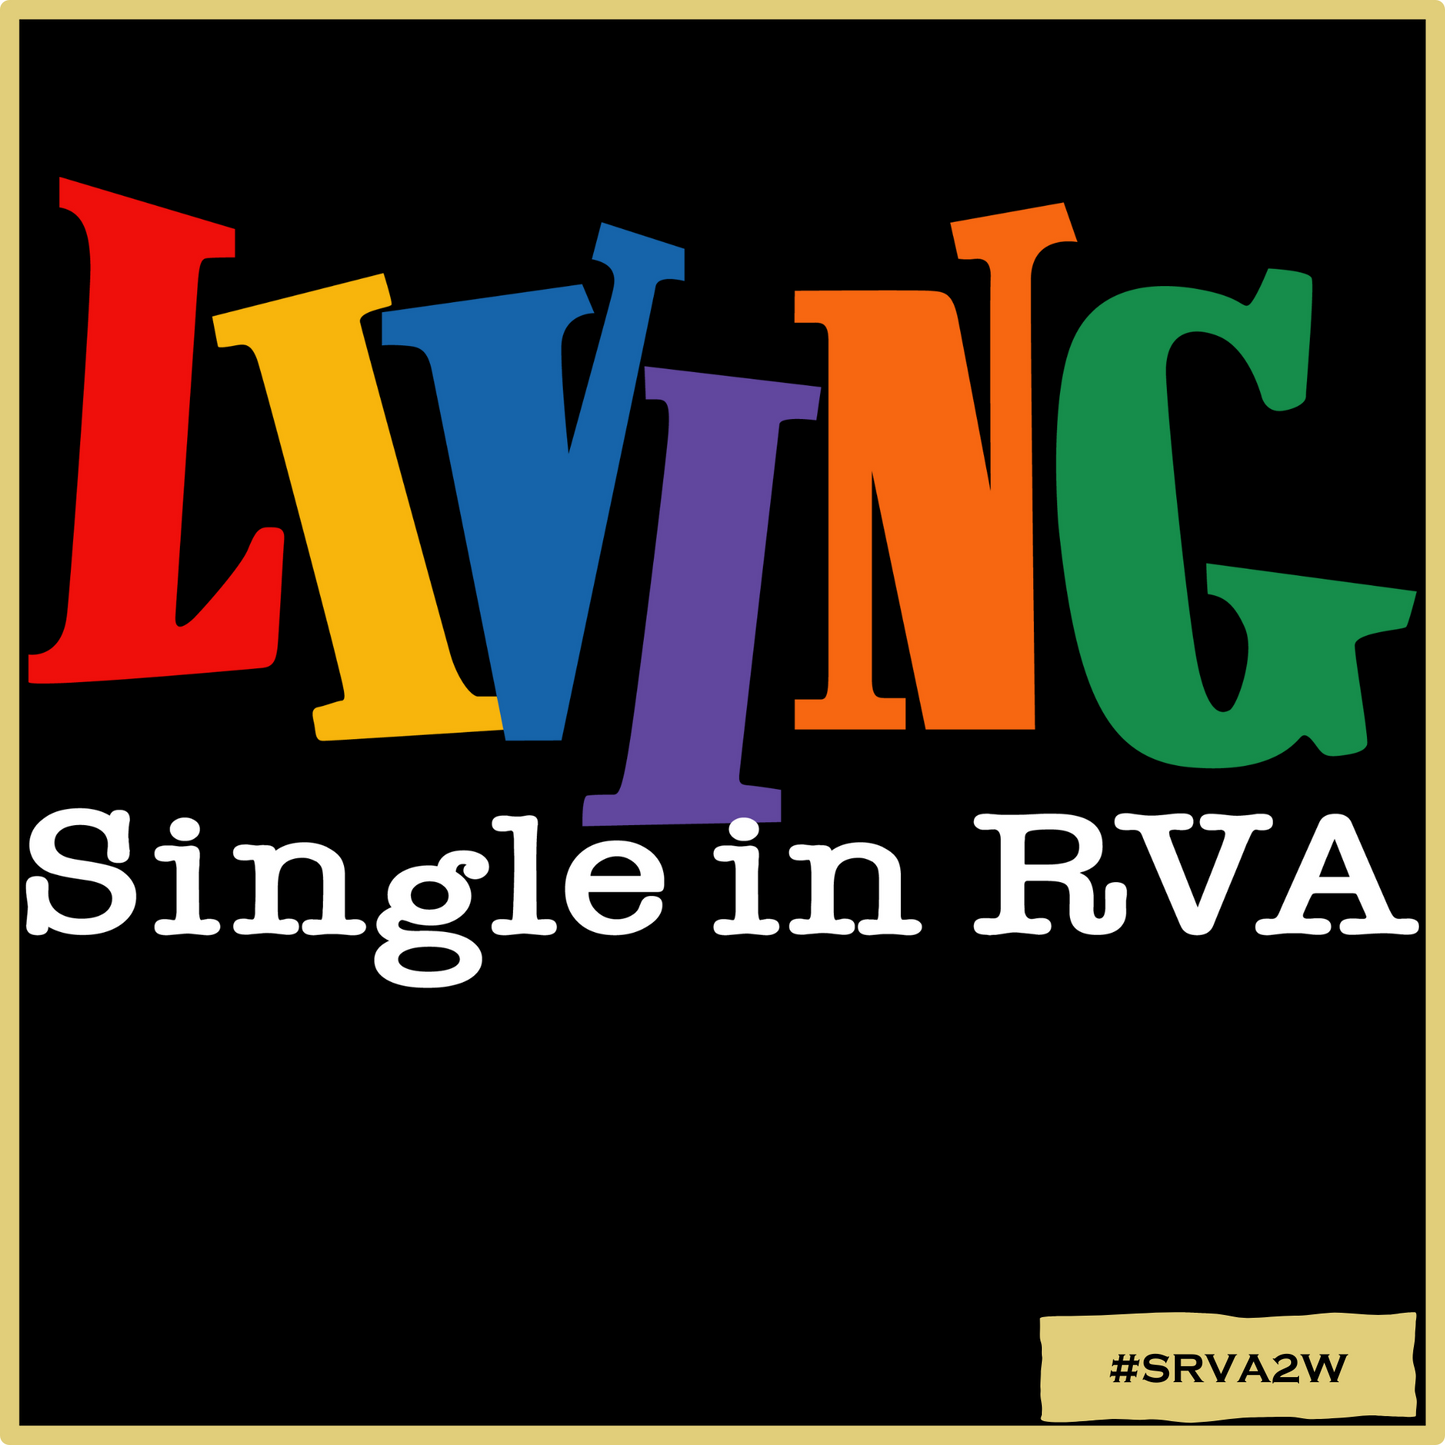 Living Singles in RVA